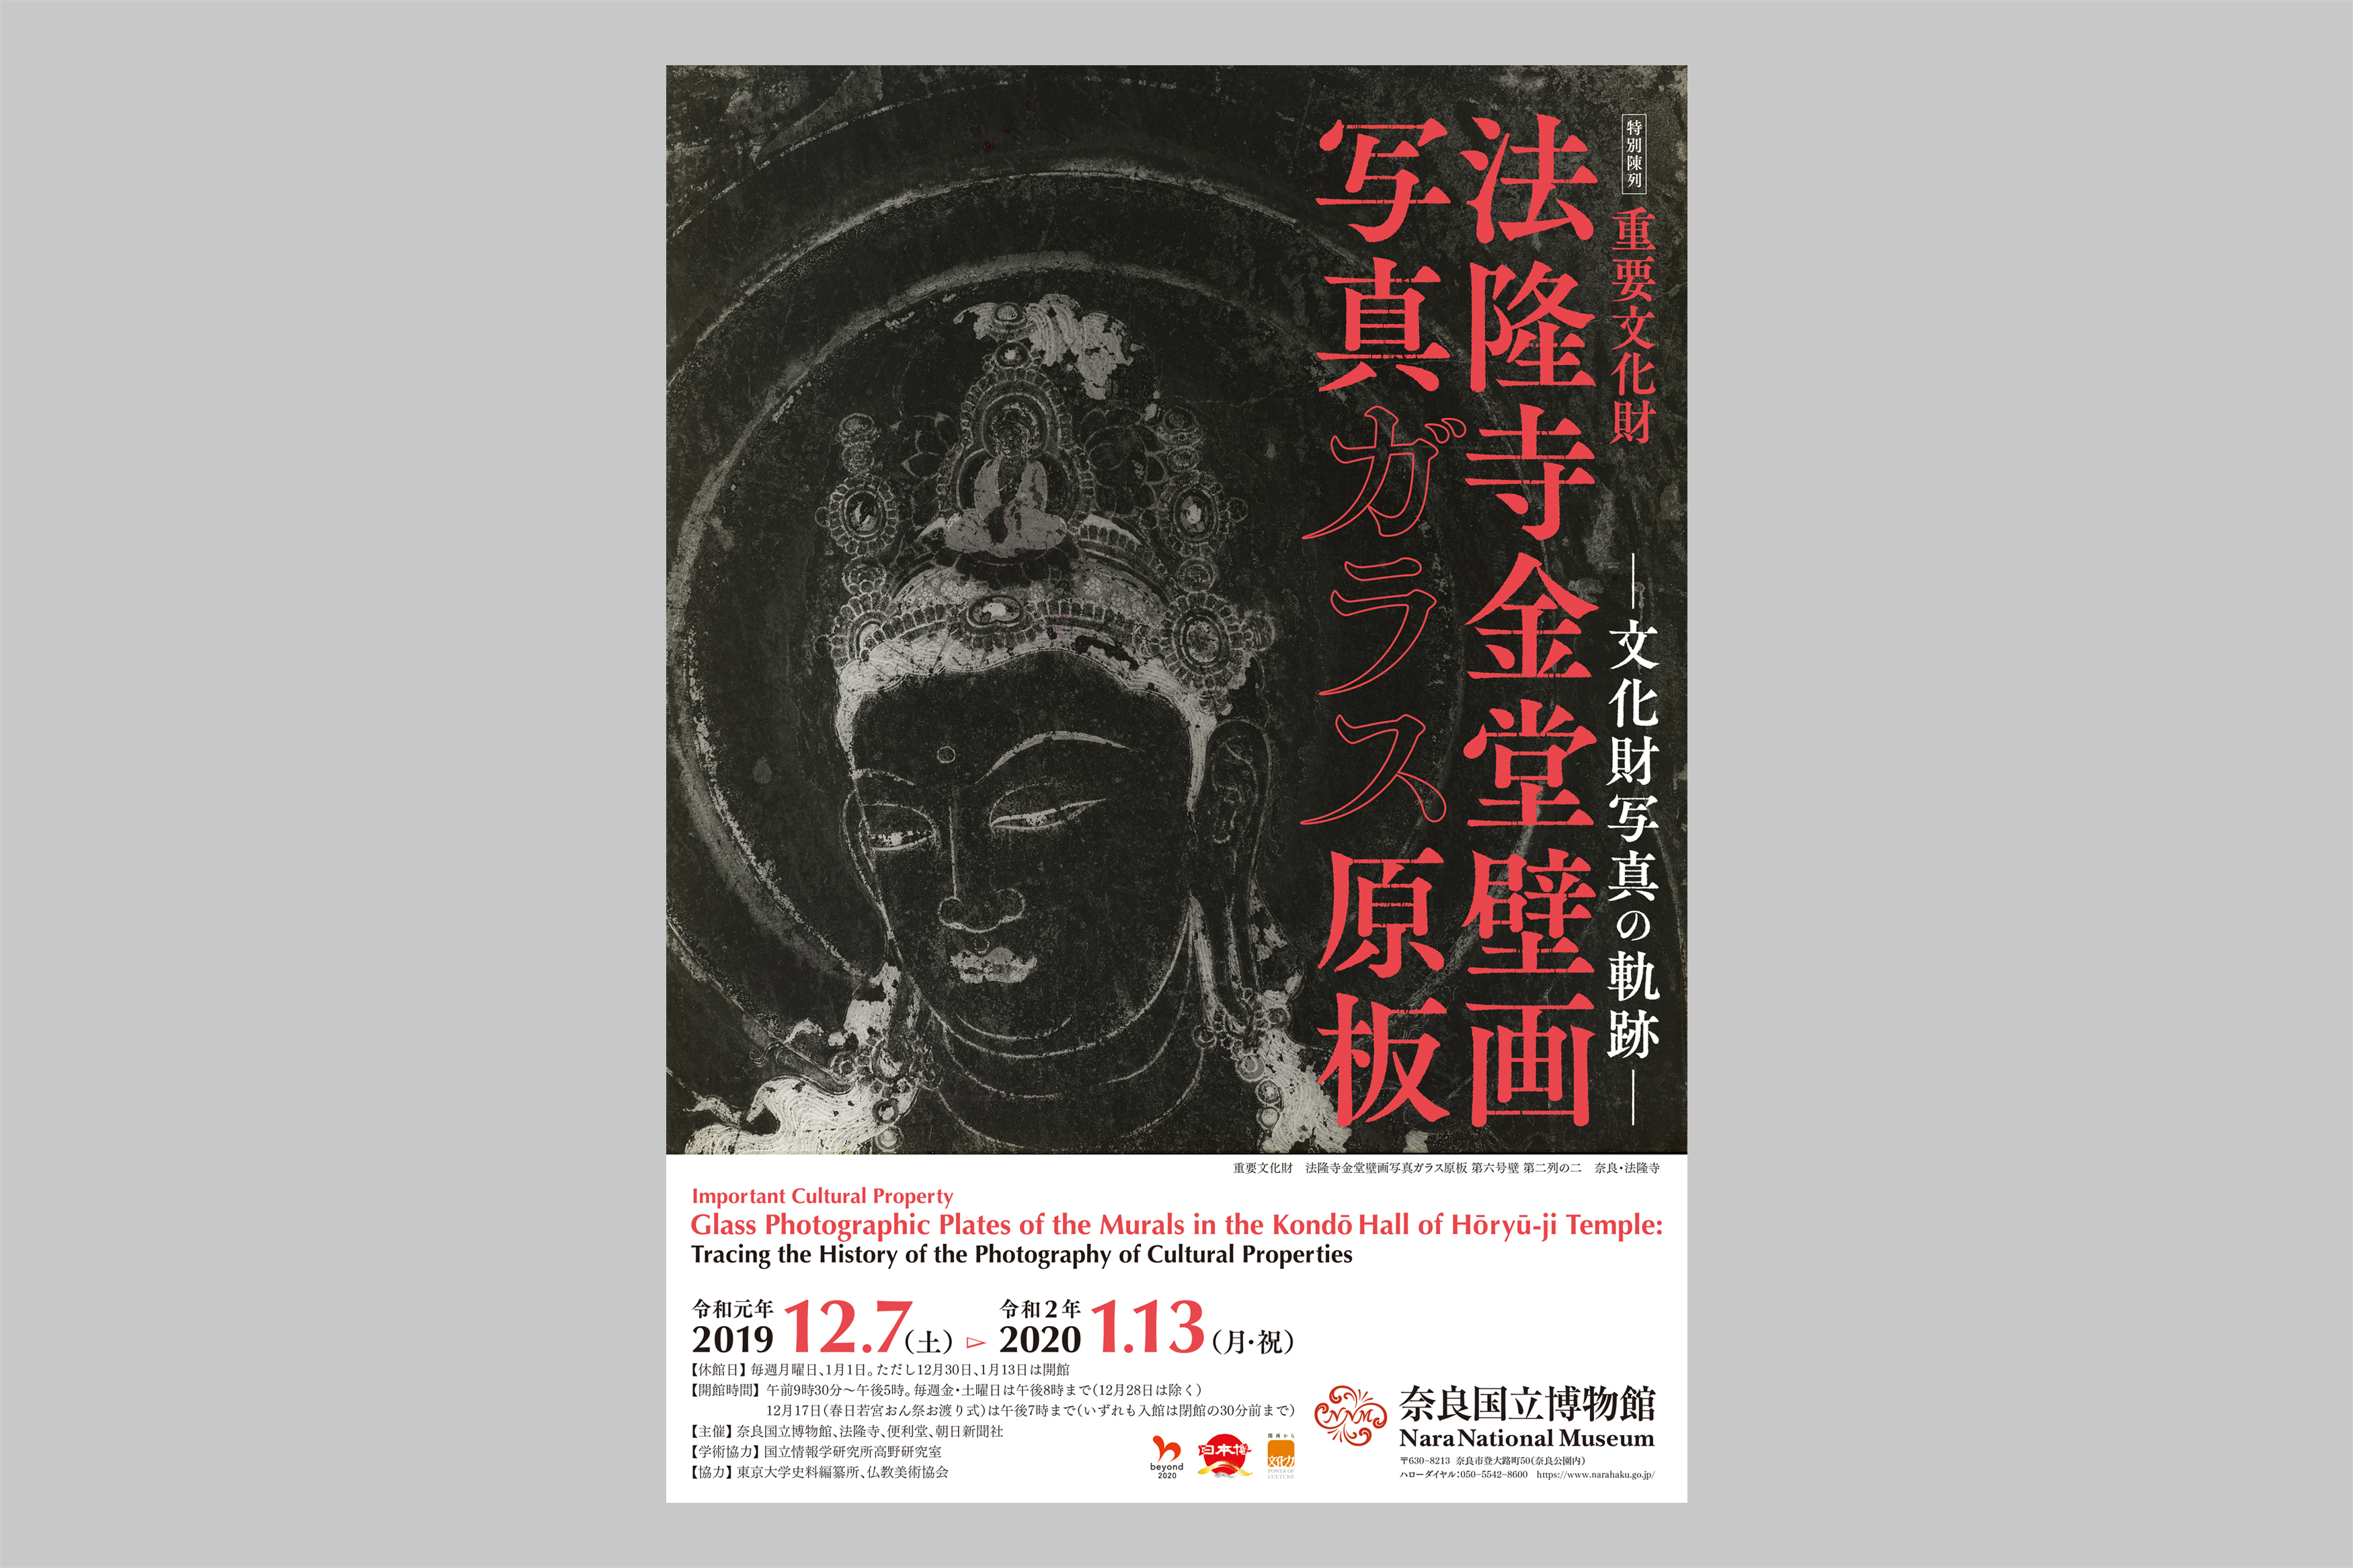 奈良国立博物館『重要文化財 法隆寺金堂壁画写真ガラス原板 ―文化財